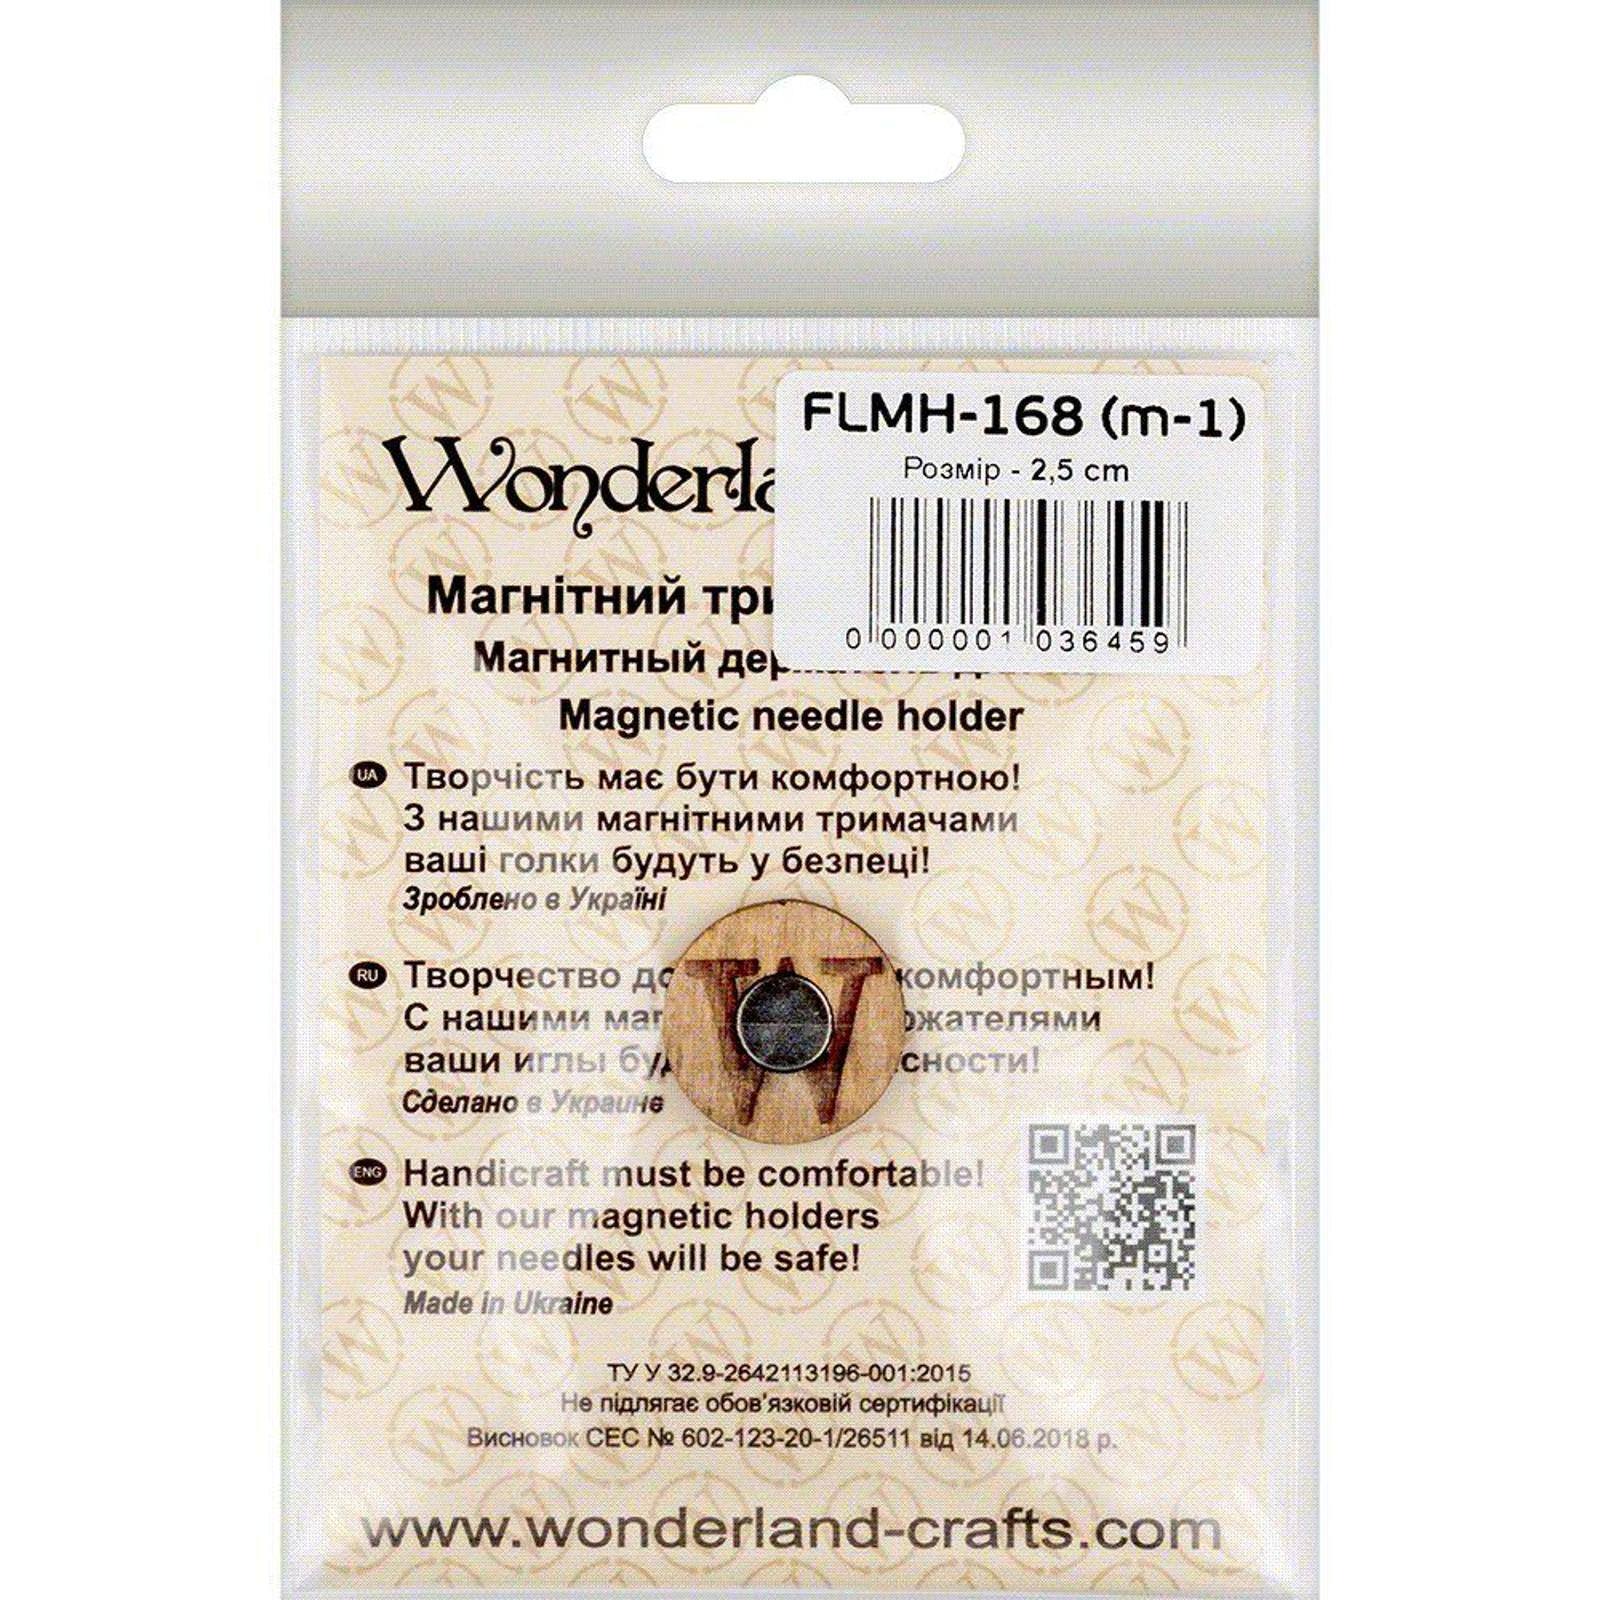 Wonderland Crafts Flora & Fauna Magnetic Needle Holder